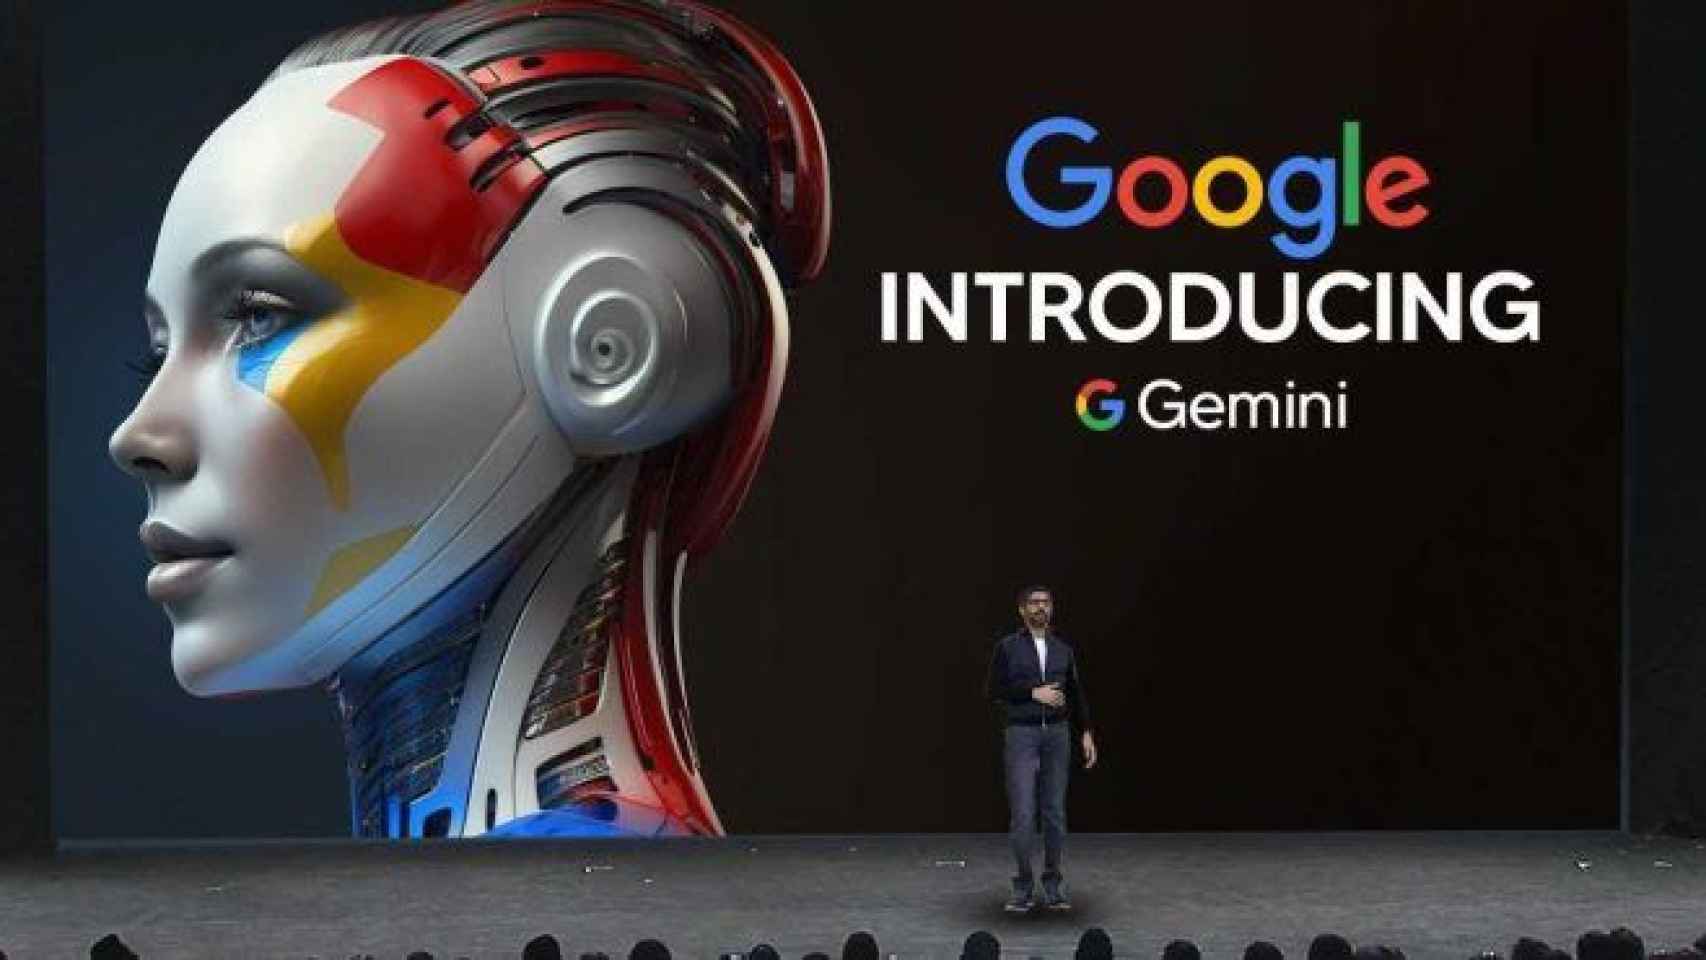 Gemini es el ecosistema de inteligencia artificial de Google.